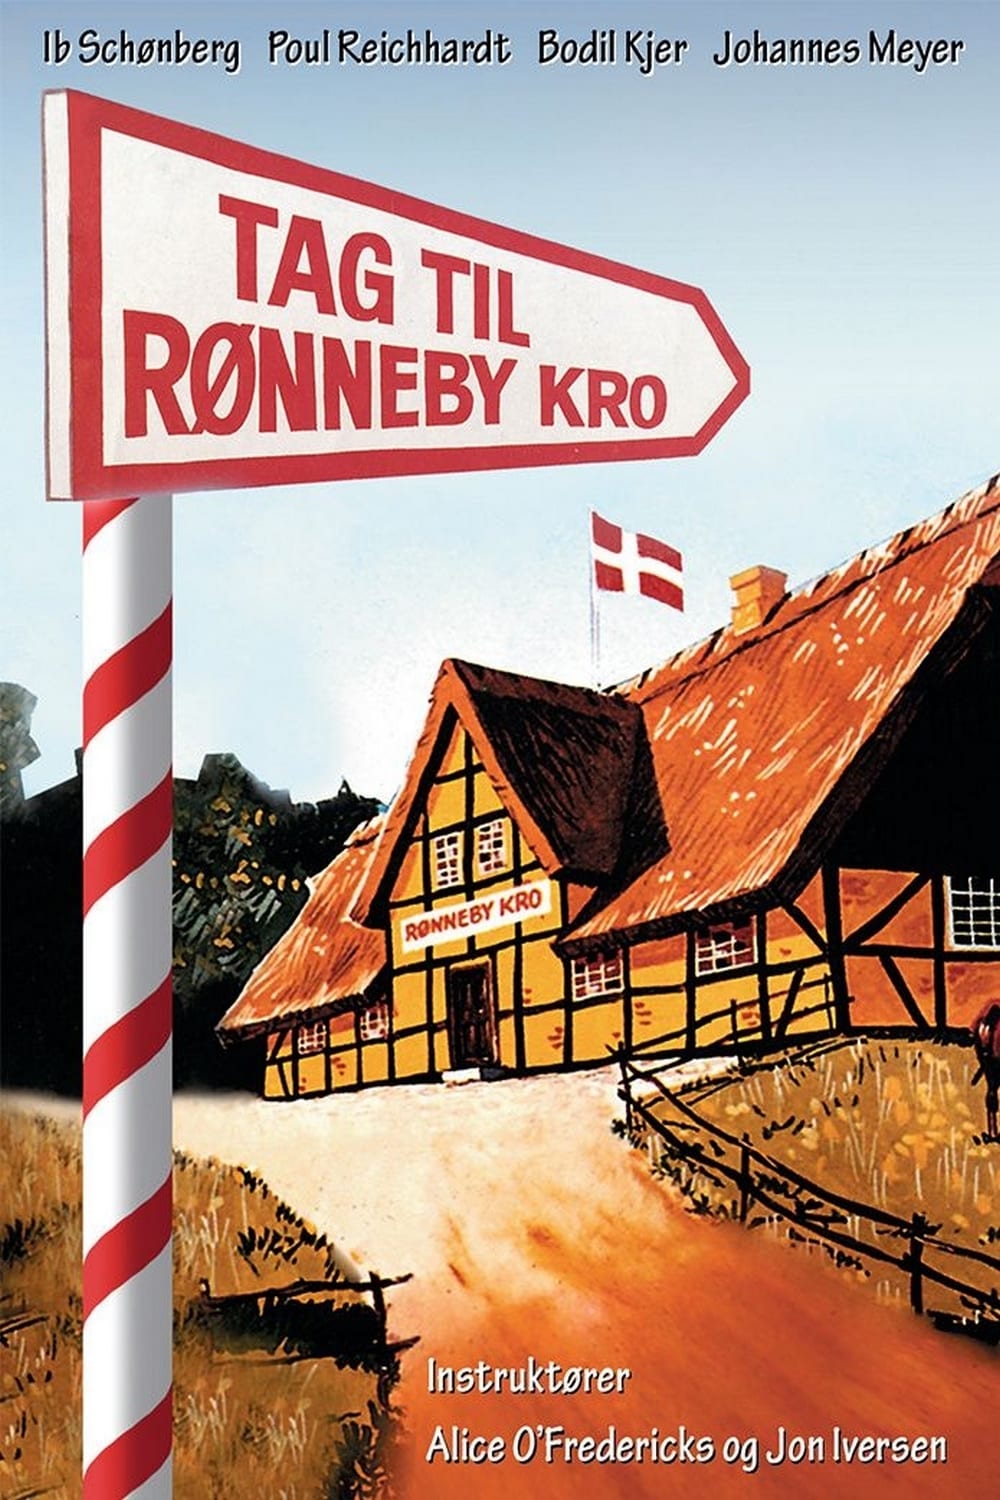 Tag til Rønneby kro (1941)